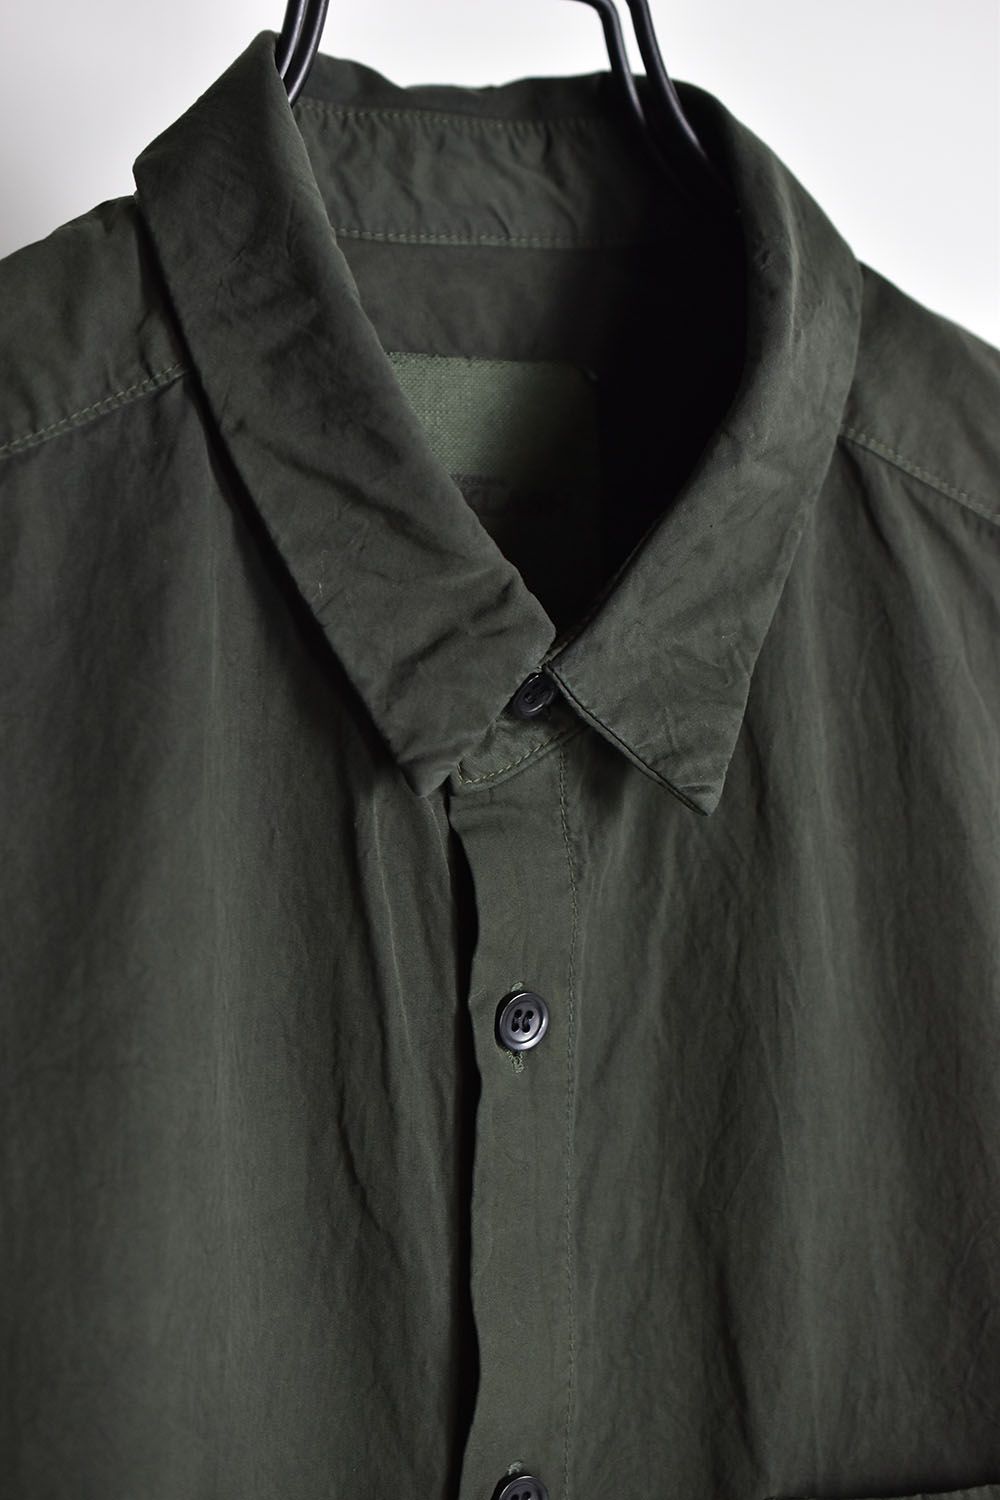 Cootn Natural Dye Shirts"Leaf"/コットン製品天然染めシャツ"リーフ"